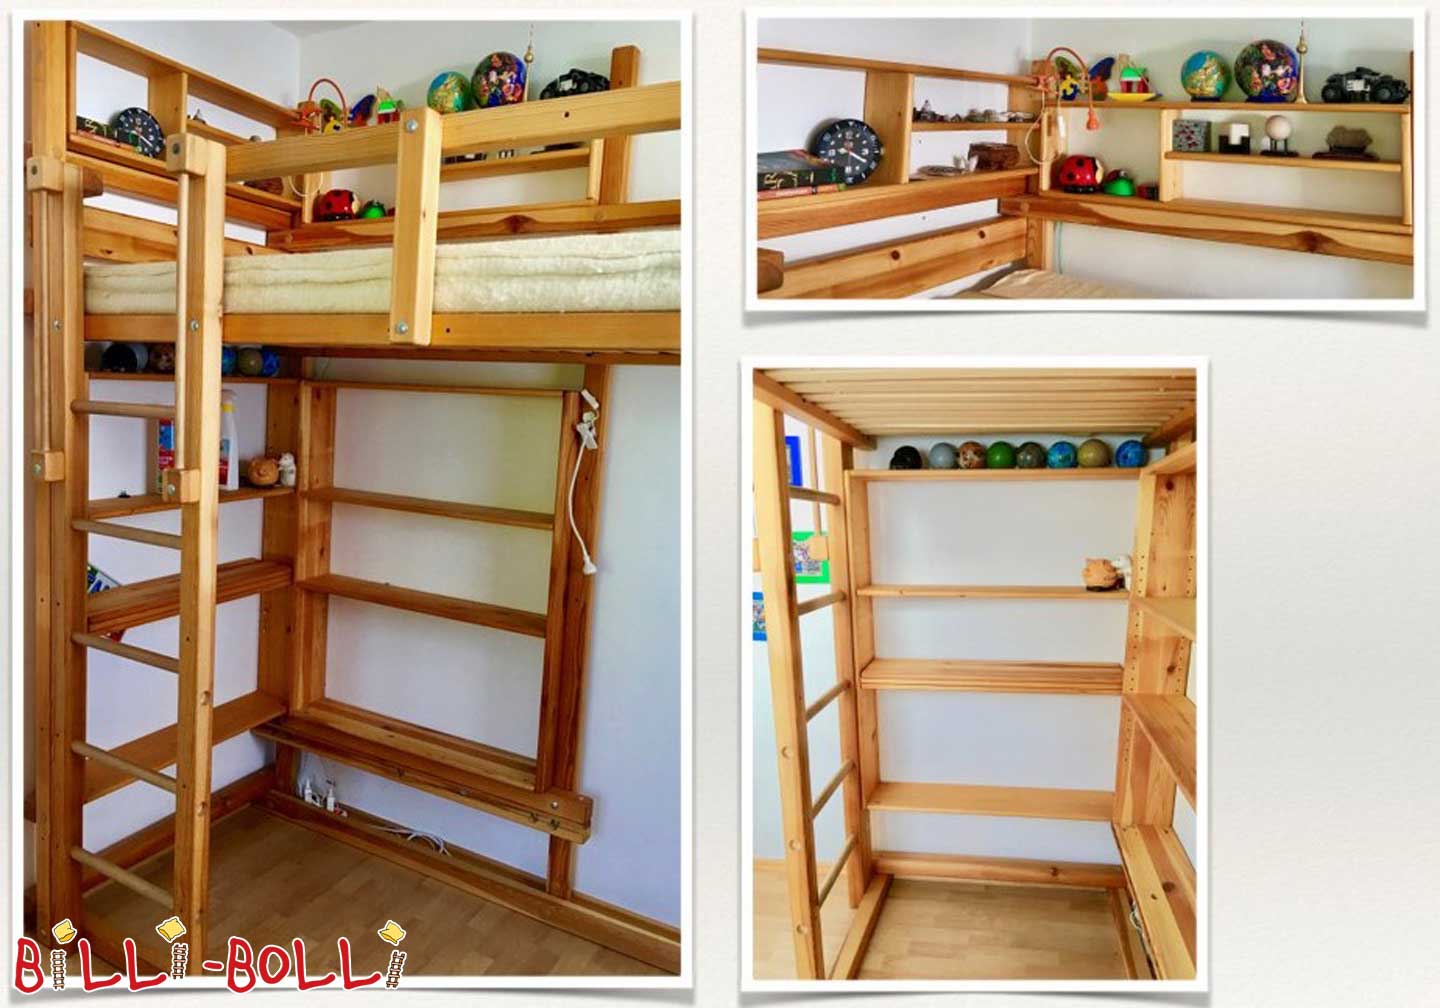 سرير شباب Billi-Bolli عالي، 90 × 200 سم، صنوبر مشمع بالزيت (باب: أثاث الأطفال المستخدم)